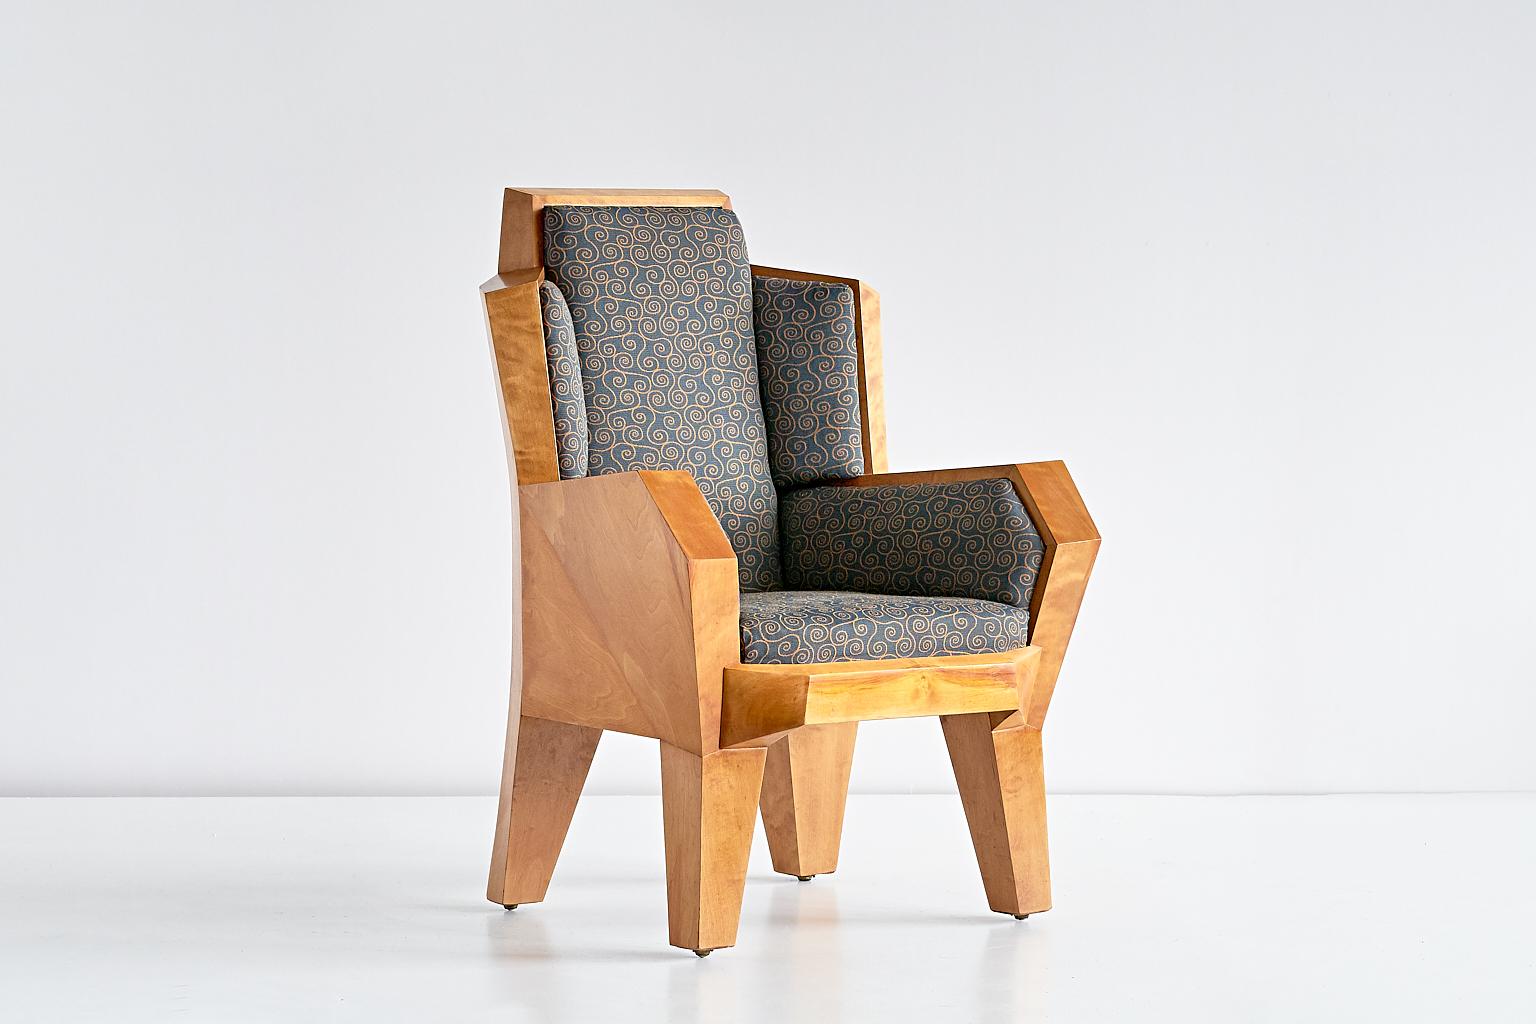 Dieser einzigartige Sessel wurde 1928 von Camillo Cerri speziell für die Einrichtung des Hauses Reinbach in Stuttgart entworfen. Der Stuhl wurde in Dornach, Schweiz, von August Tobler hergestellt, der die meisten Entwürfe von Cerri von Hand